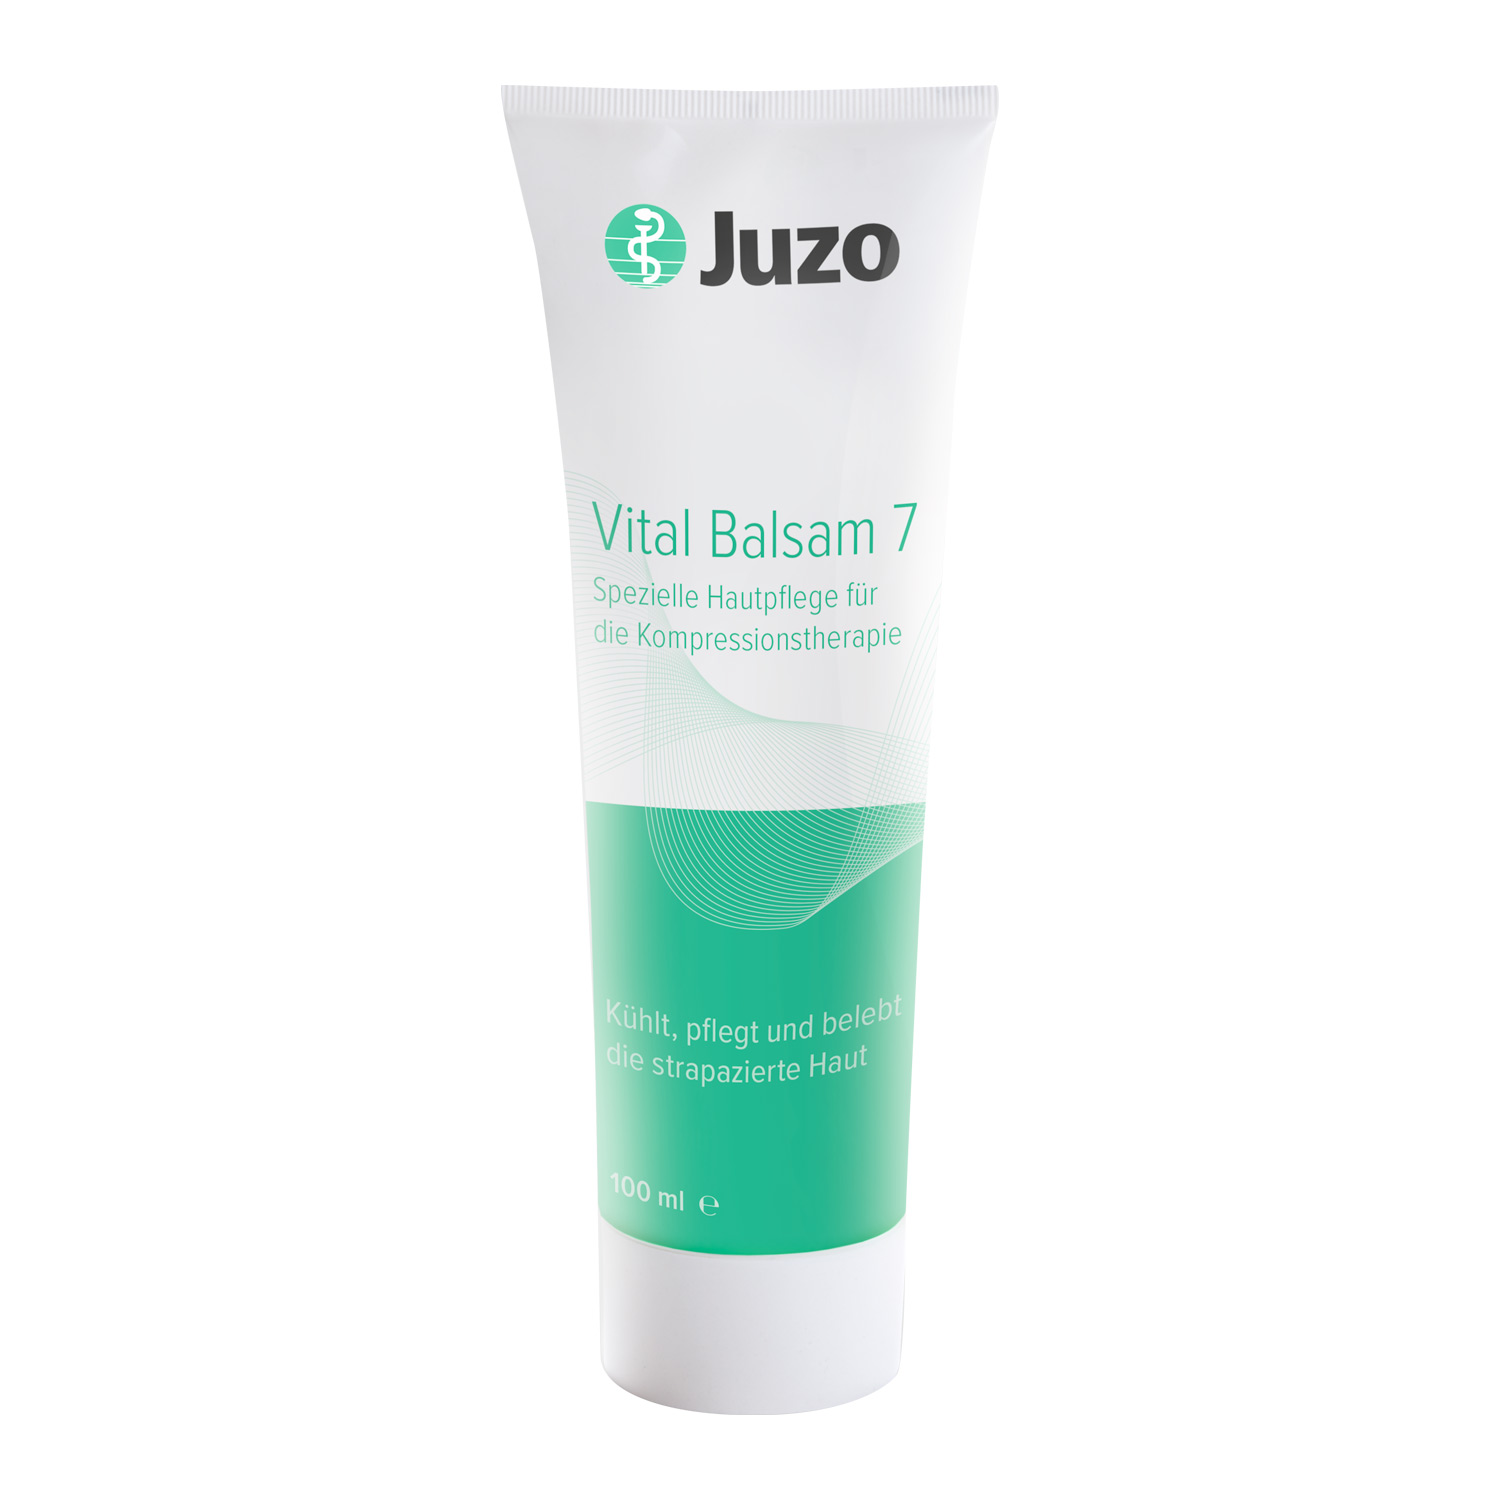 Juzo Vital Balsam 7 - spezielle Hautpflege für die Kompressionstherapie